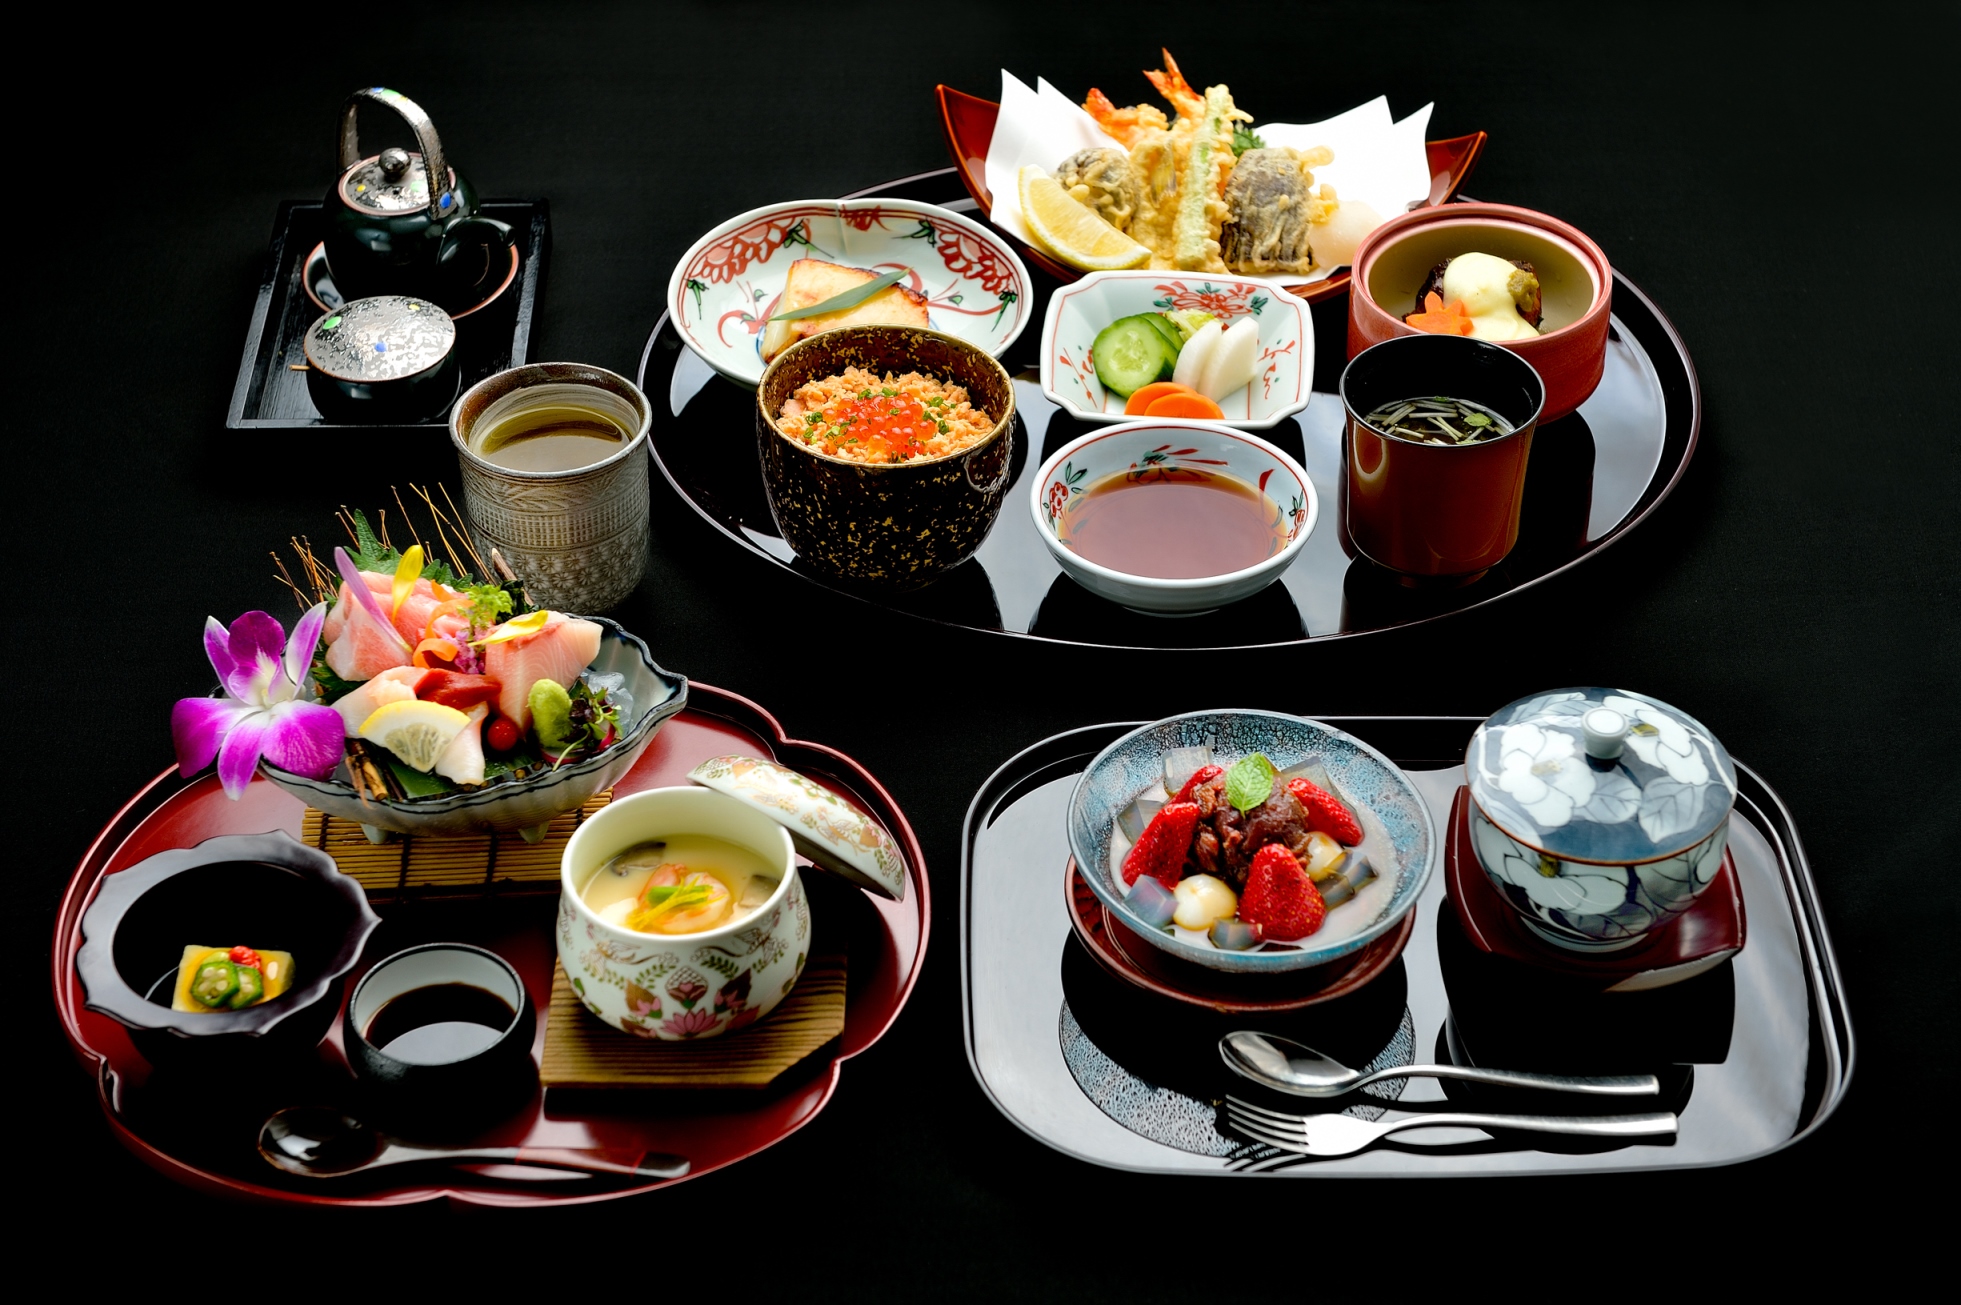 ห้องอาหารยามาซาโตะได้รับ มิชลิน เพลท จากคู่มือแนะนำร้านอาหารและที่พักระดับโลก 'มิชลิน ไกด์' ต่อเนื่องเป็นปีที่ 4